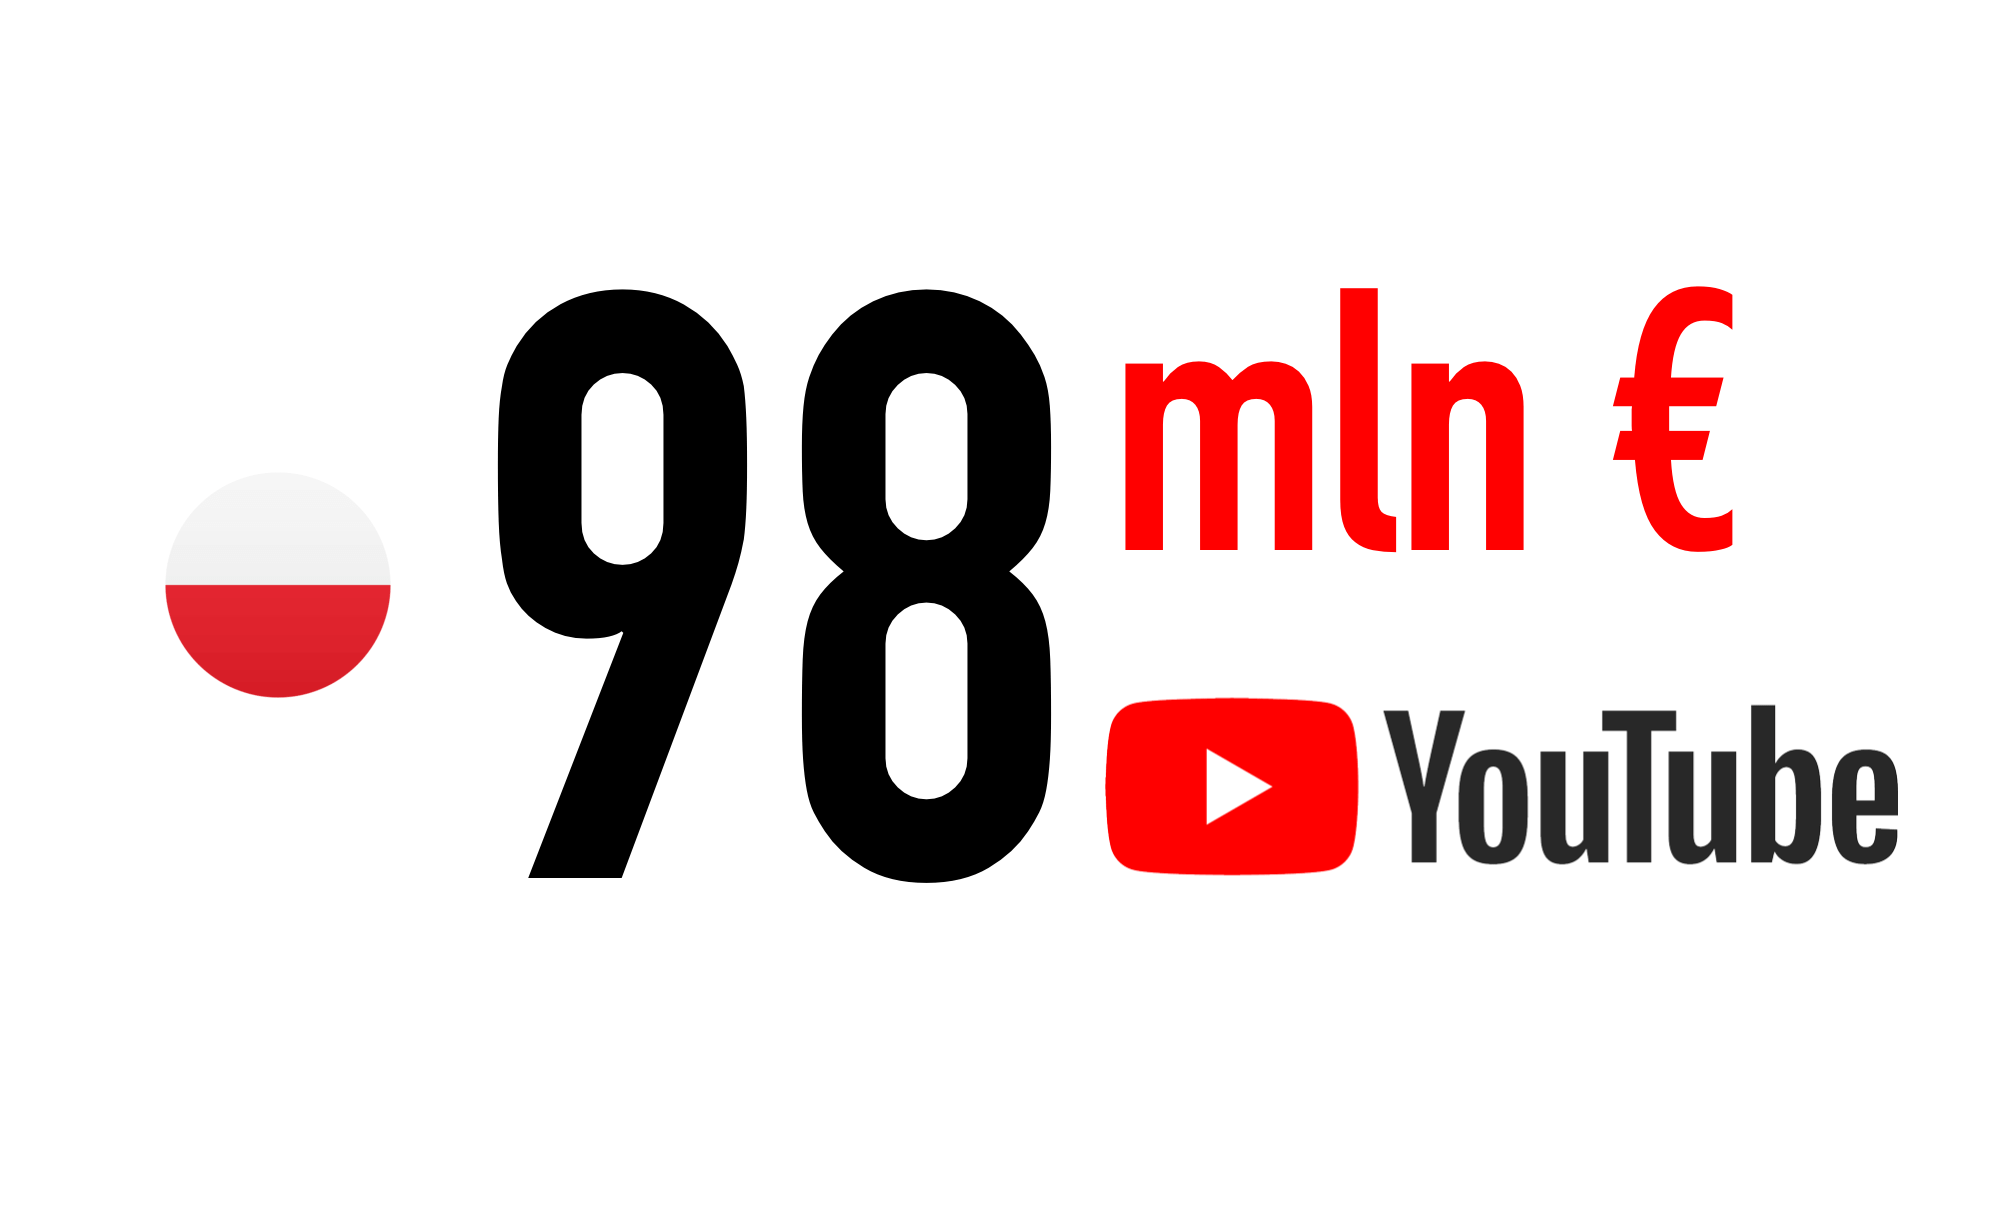 Oxford Economics szacuje, że w 2020 roku kreatywny ekosystem YouTube wniósł około 98 milionów euro do PKB Polski